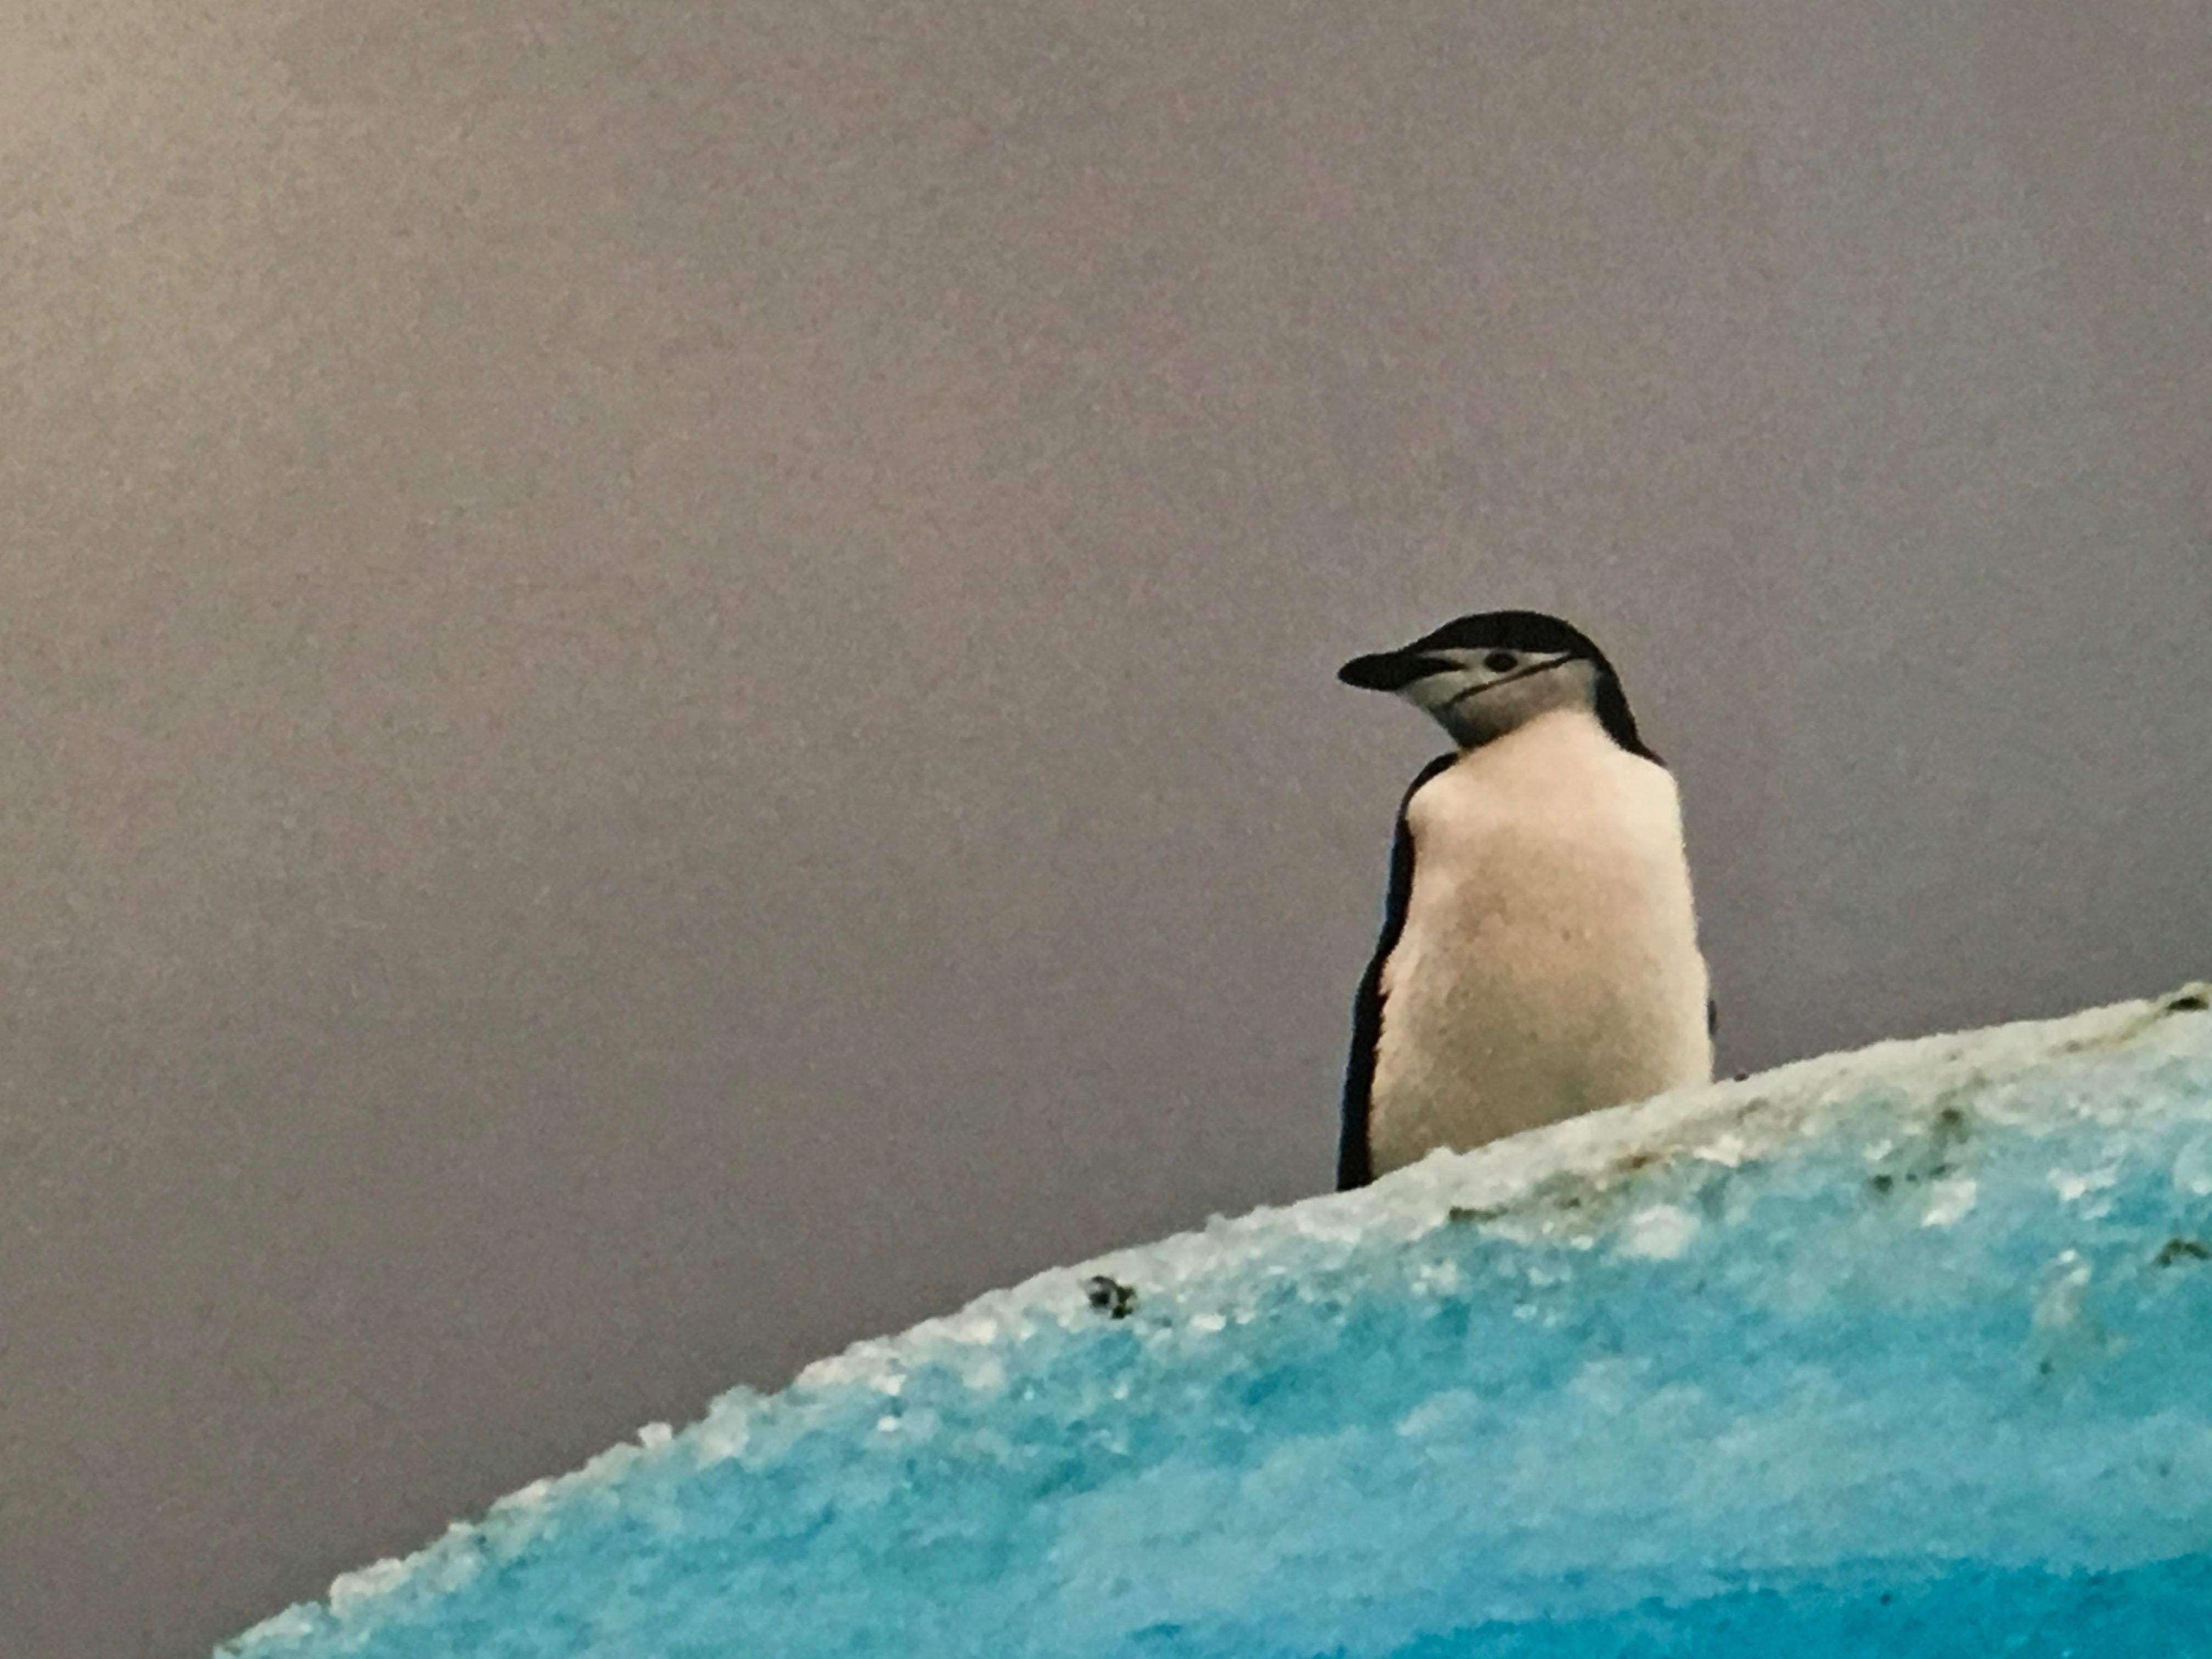 Antarctica n° 2, Édition limitée, photographie, Pingouin, Iceberg, encadrée, décoration pour enfants - Réalisme américain Photograph par John Conn